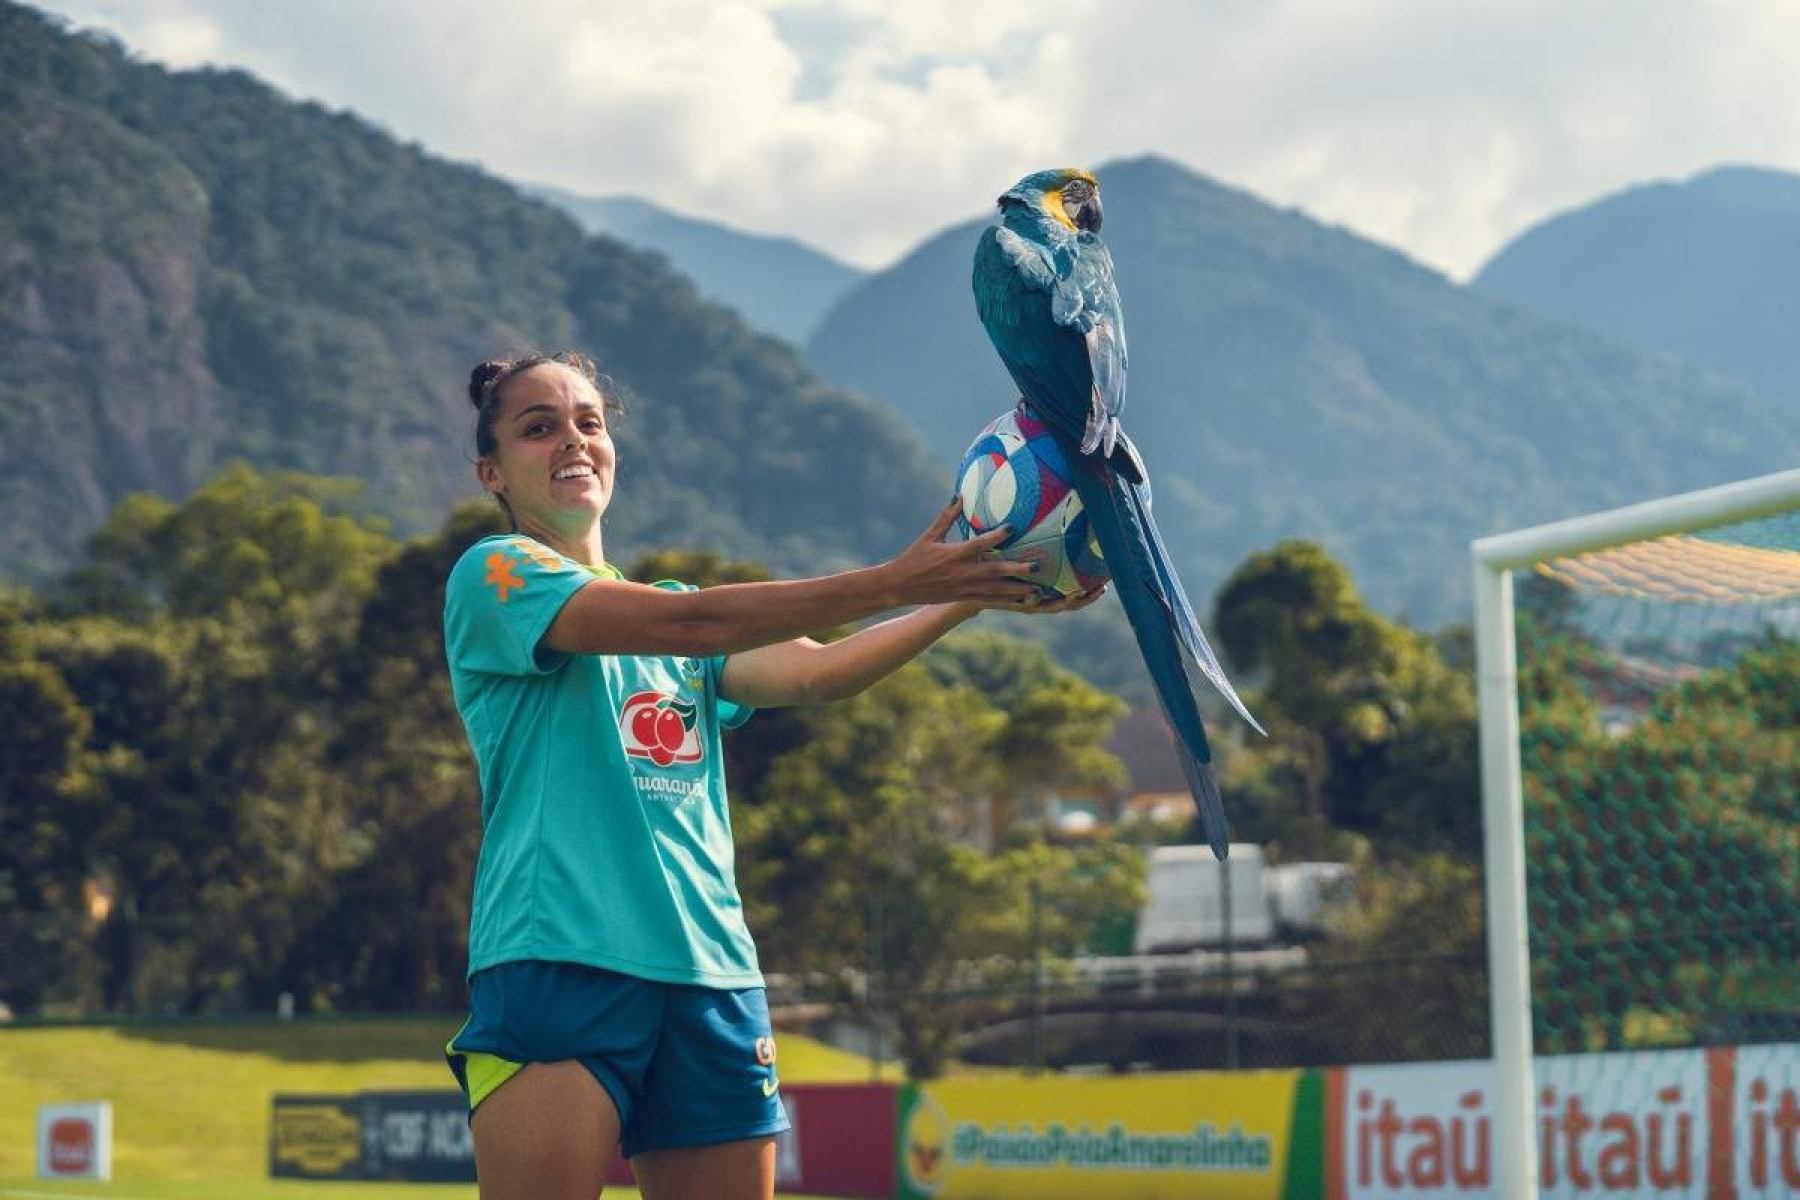 Équipe Brasília: Gabi Portilho, a única brasiliense no futebol feminino